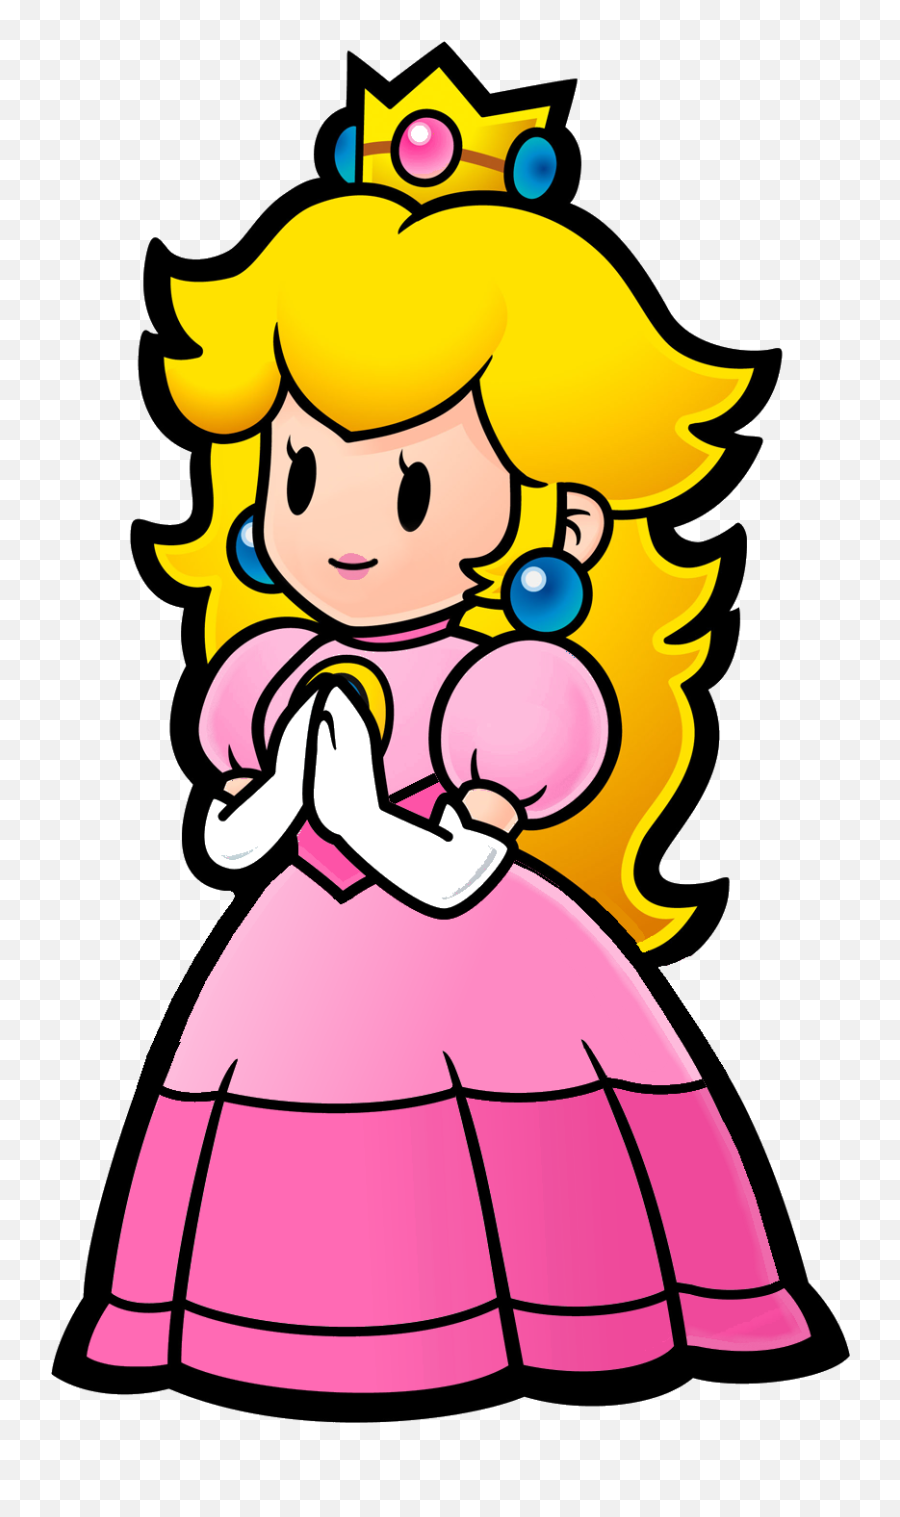 Princess Peach Clipart Vector - Princess Peach Paper Mario Princess Peach Clipart Emoji,Peach Clipart